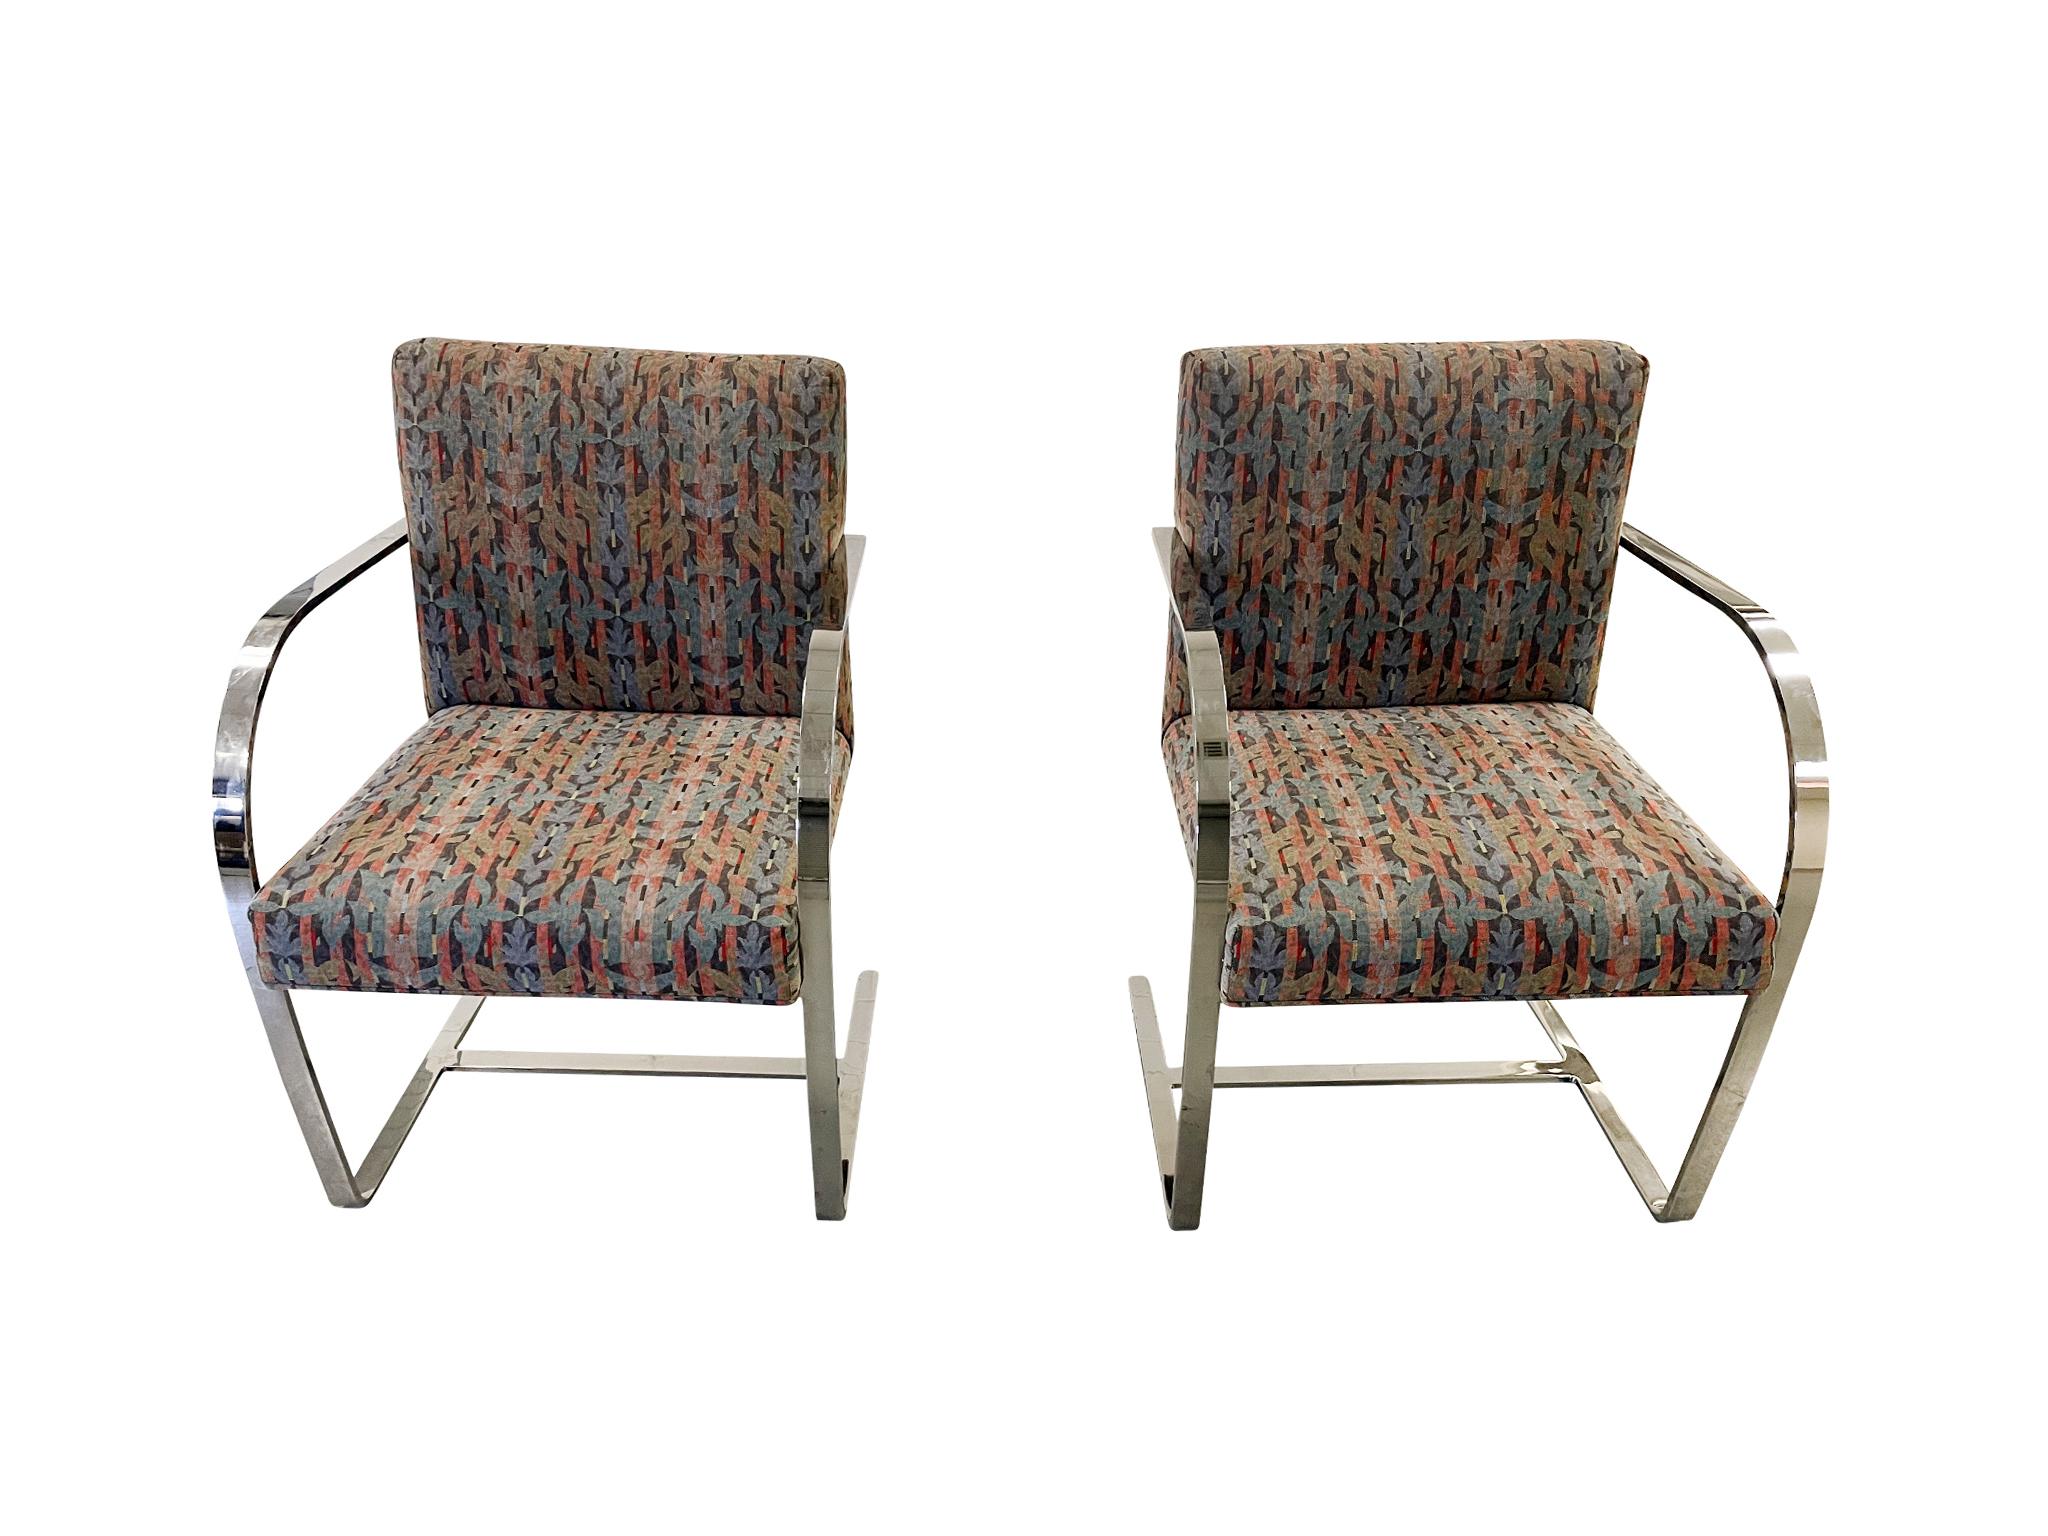 Ensemble composé de 6 fauteuils chromés attribués à Ludwig Mies van der Rohe. Conçues à l'origine dans les années 1930, les chaises Brno sont emblématiques pour leur structure cantilever chromée à barre plate. Ces chaises particulières sont